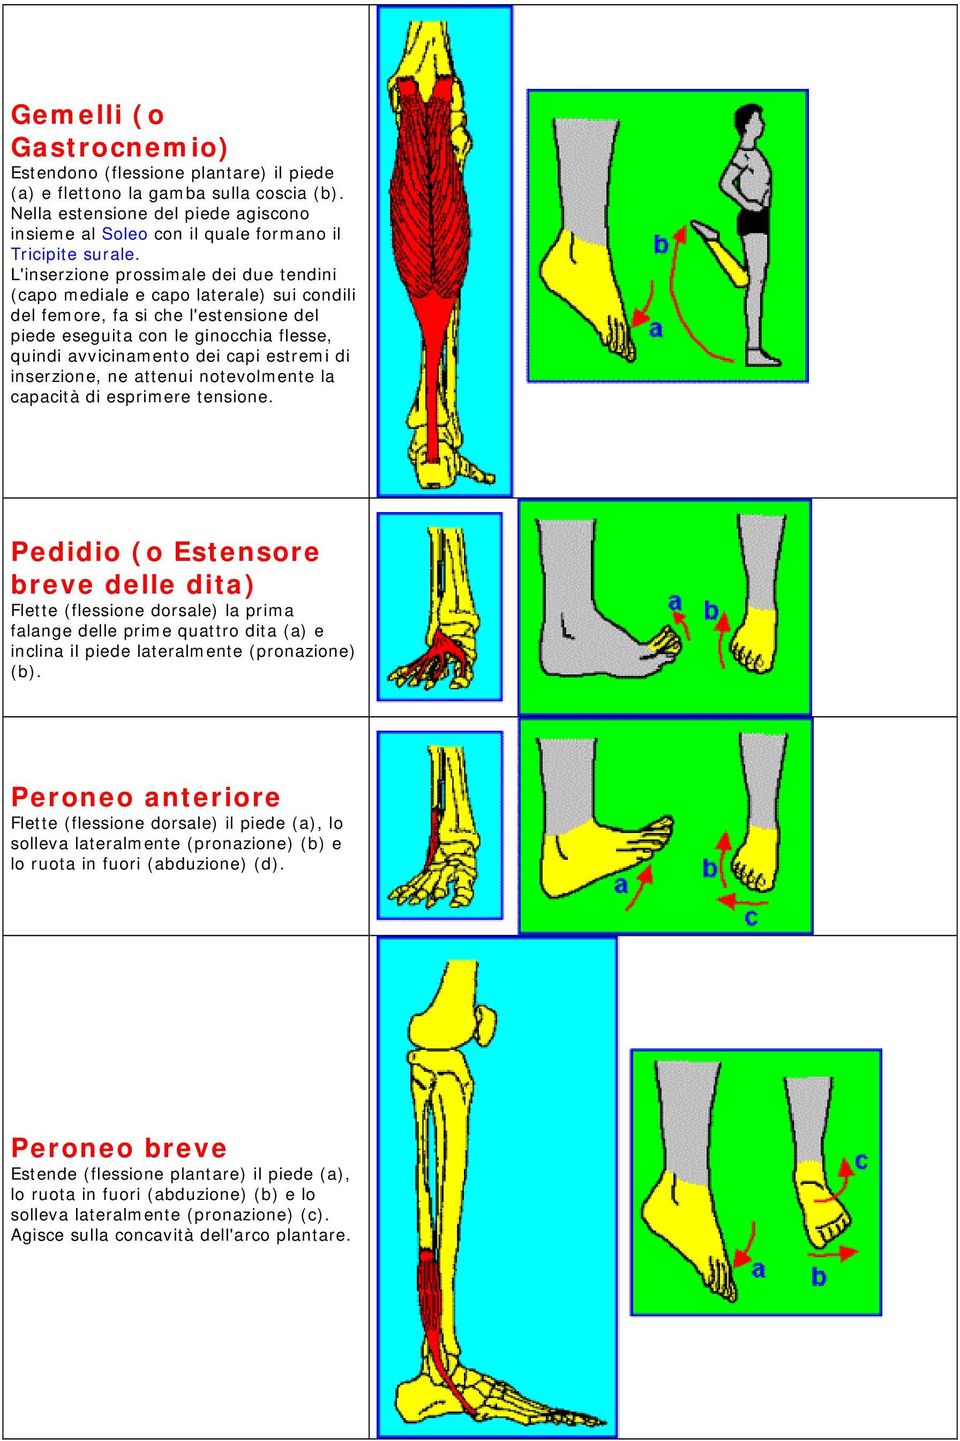 L'inserzione prossimale dei due tendini (capo mediale e capo laterale) sui condili del femore, fa si che l'estensione del piede eseguita con le ginocchia flesse, quindi avvicinamento dei capi estremi